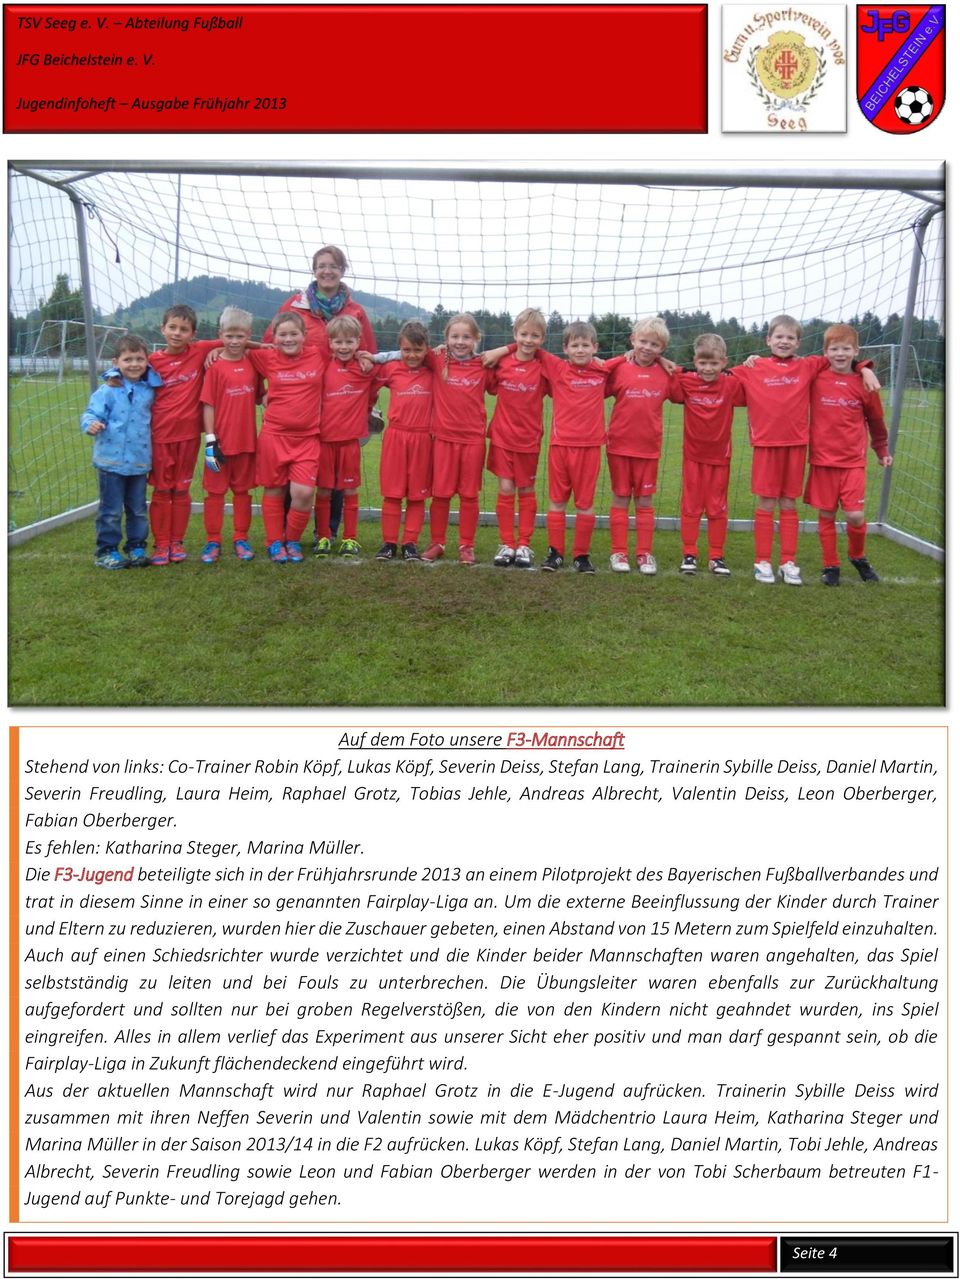 Die F3-Jugend beteiligte sich in der Frühjahrsrunde 2013 an einem Pilotprojekt des Bayerischen Fußballverbandes und trat in diesem Sinne in einer so genannten Fairplay-Liga an.